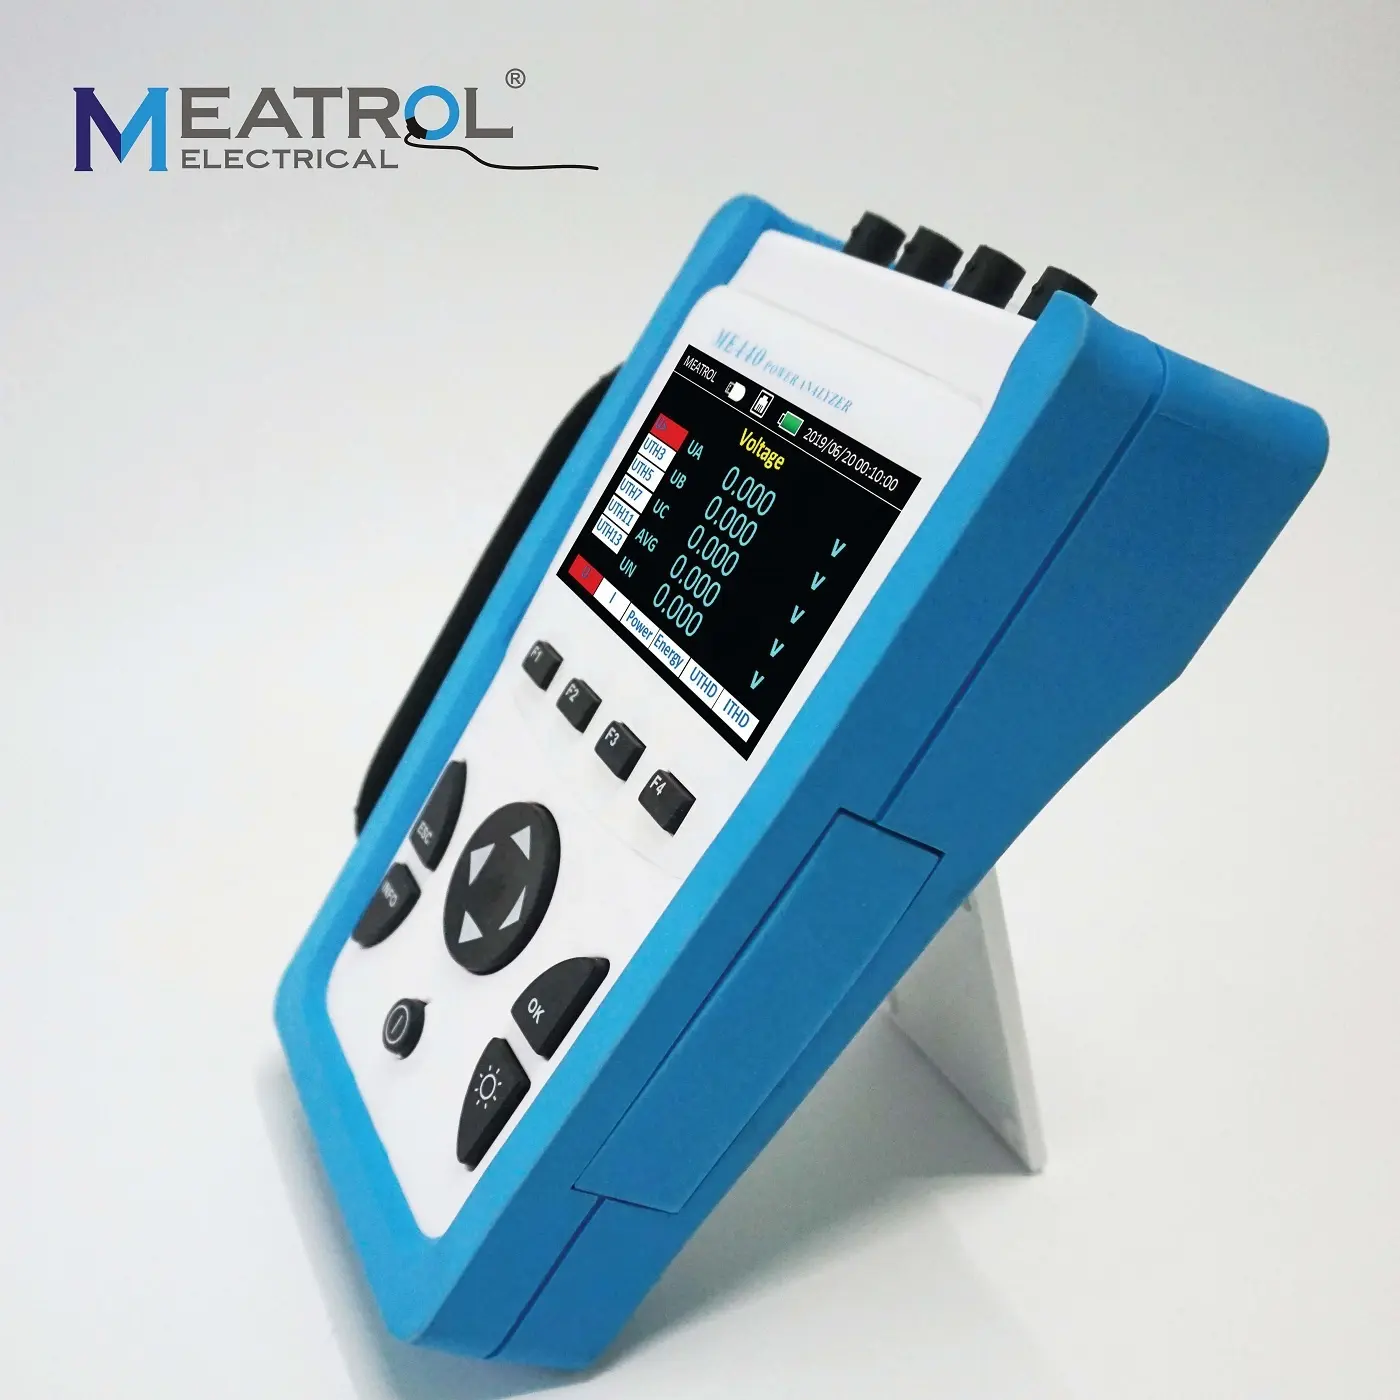 ME440 الذكية متعددة الوظائف ثلاث مراحل مقياس الطاقة/متر كهربائي/كيلو واط ساعة متر